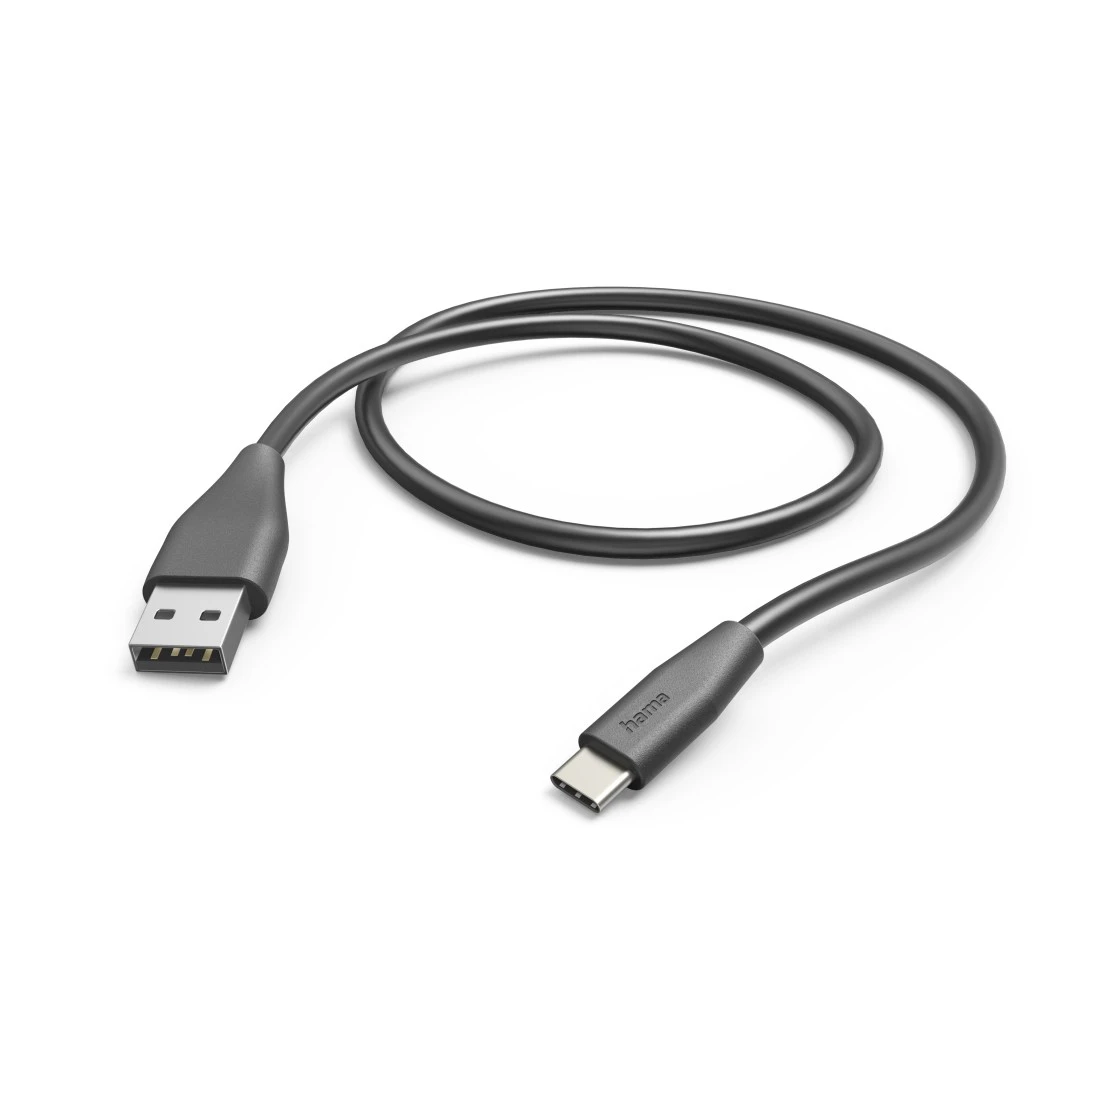 Câble de chargement USB type C - USB 2.0